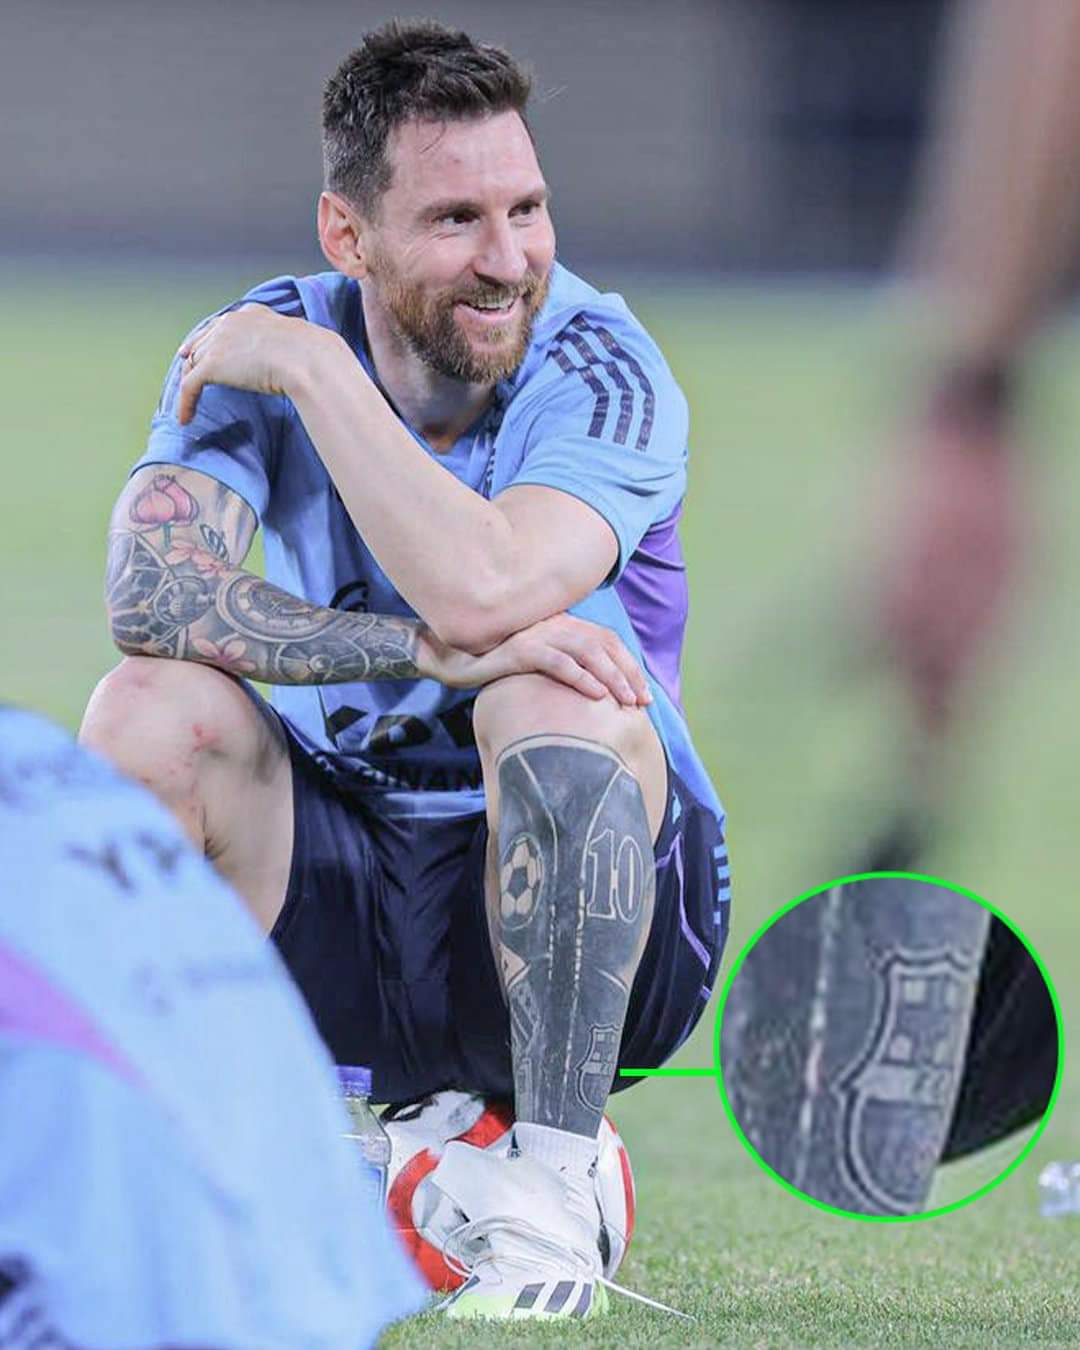 غازل النجم "ليونيل ميسي" فريقه السابق نادي برشلونة الإسباني، وذلك بعد أن أظهر يوم الأحد خلال تدريبات منتخب بلاده الأرجنتين، وشم شعار برشلونة في ساقه.